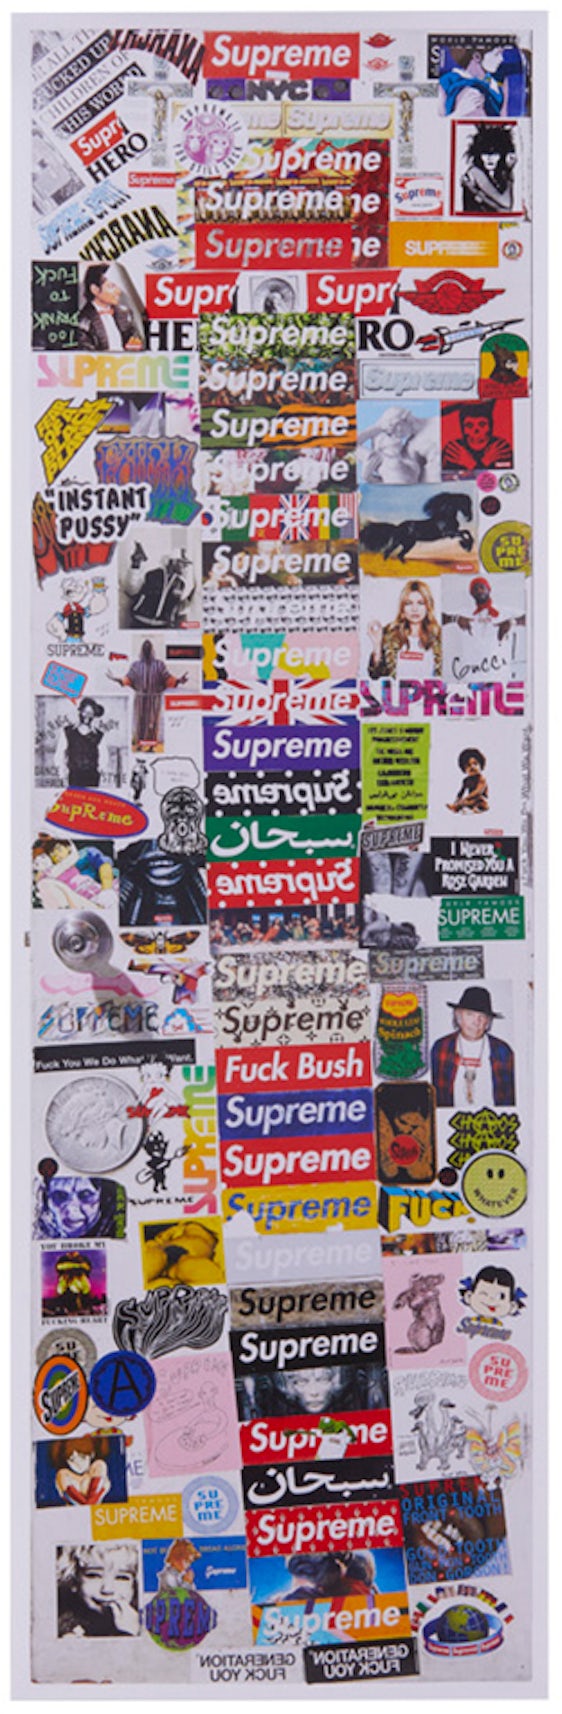 Supreme LV Print Supreme Louis Vuitton Poster Supreme Art Supreme Poster  Louis Vuitton Print Supreme